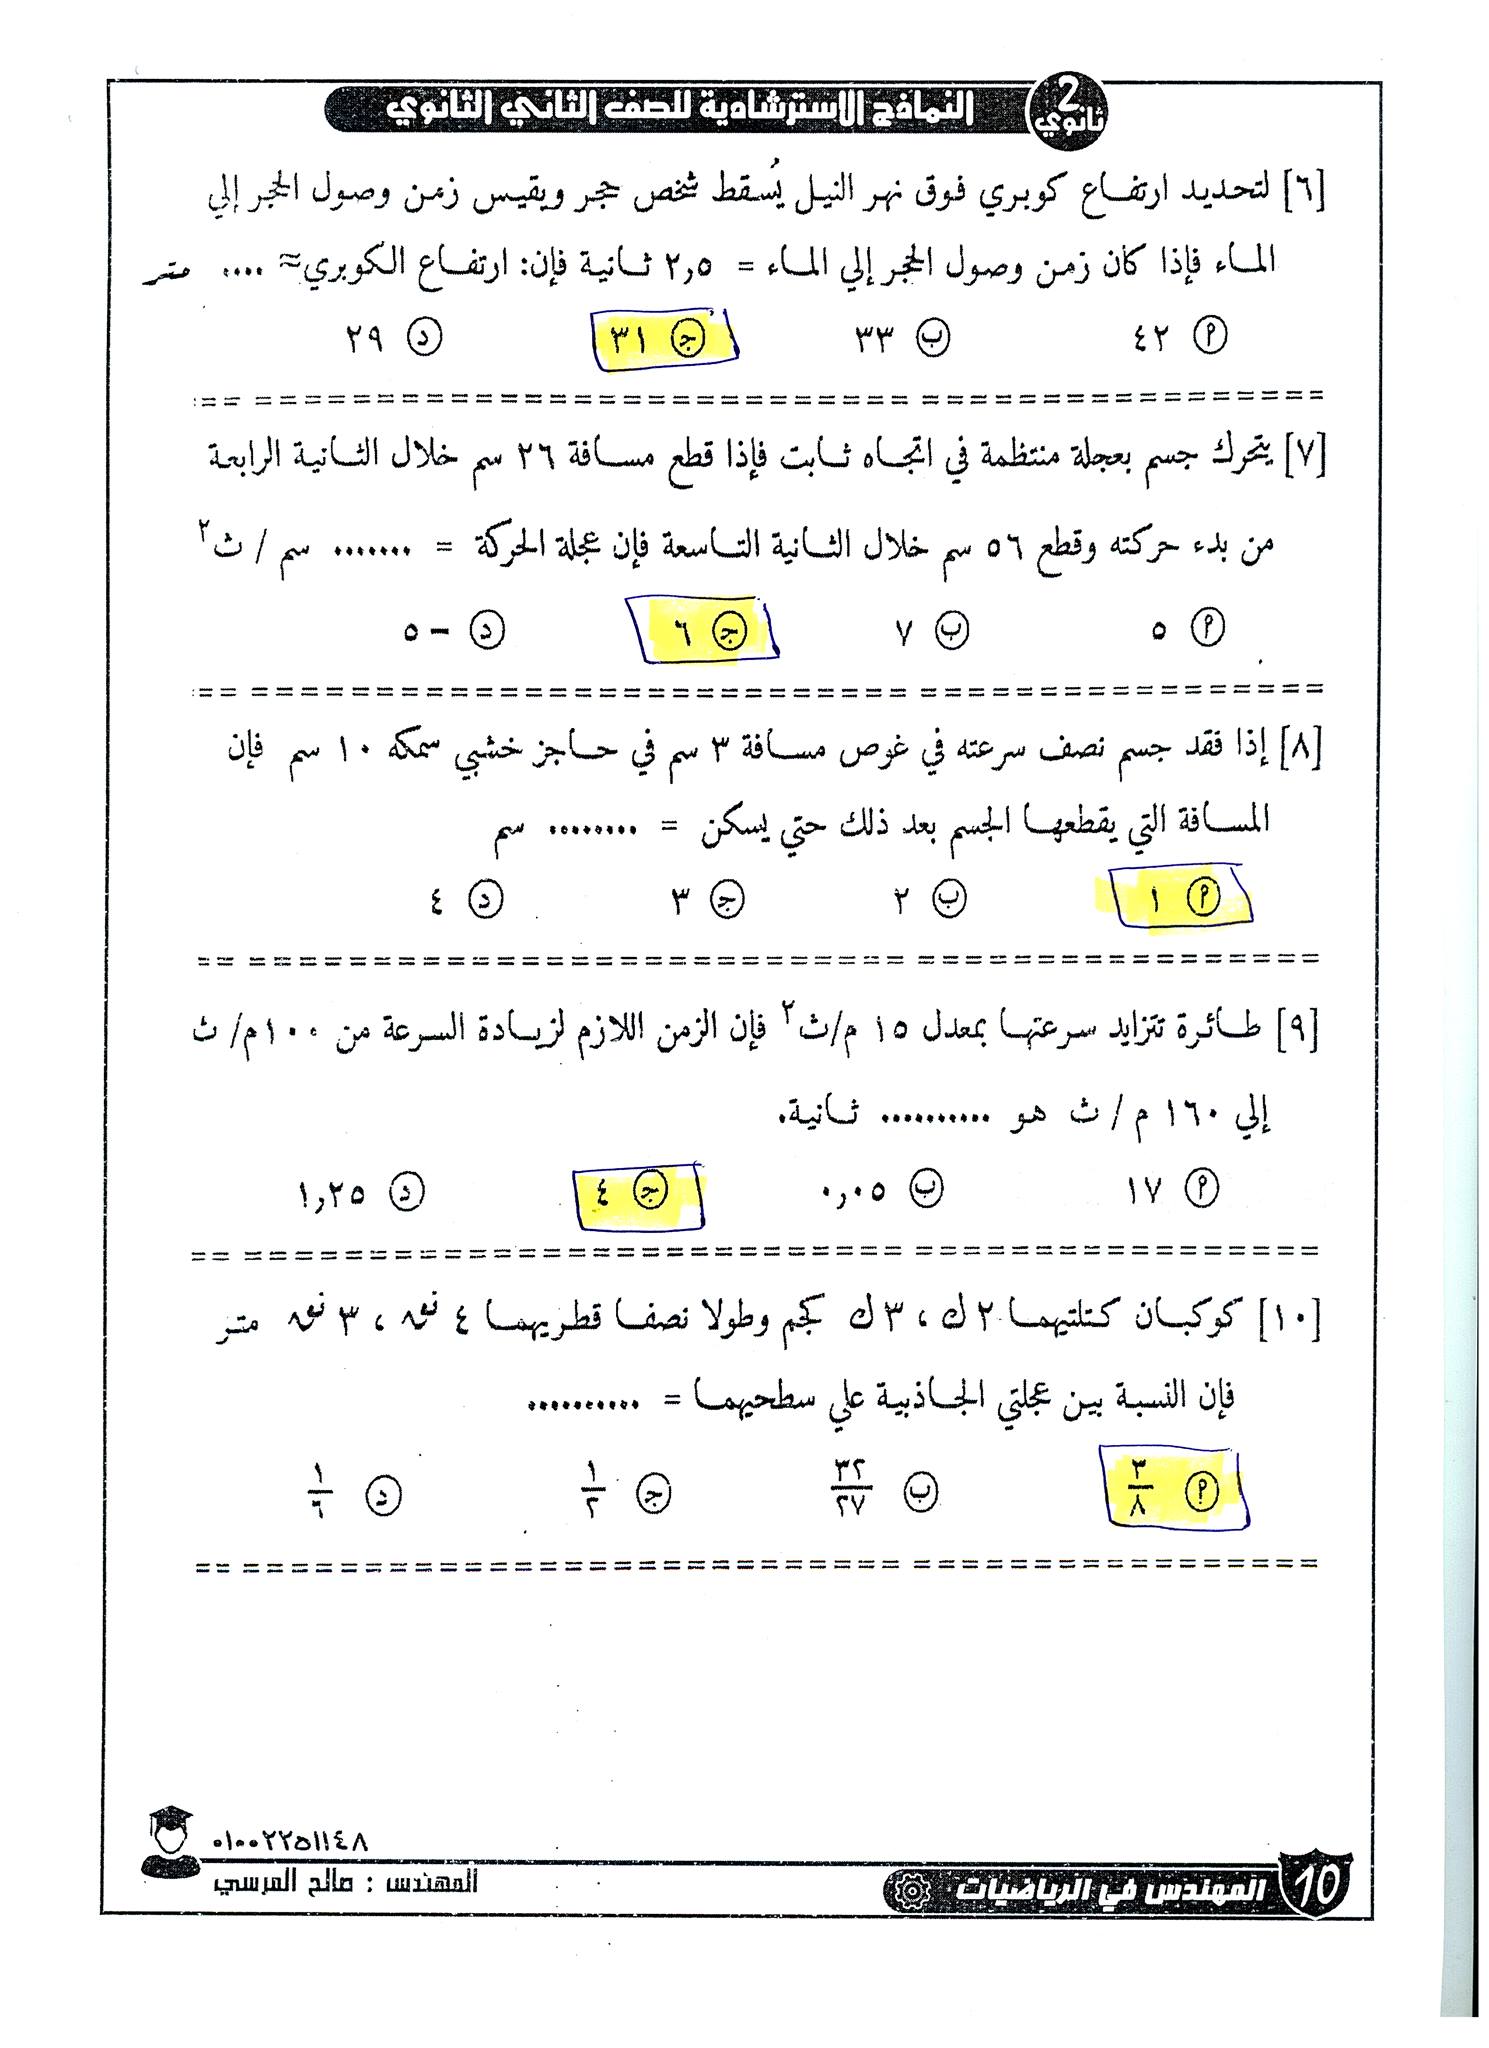 مراجعة ليلة امتحان الرياضيات التطبيقية للصف الثاني الثانوي .. حل النماذج الاسترشادية 11